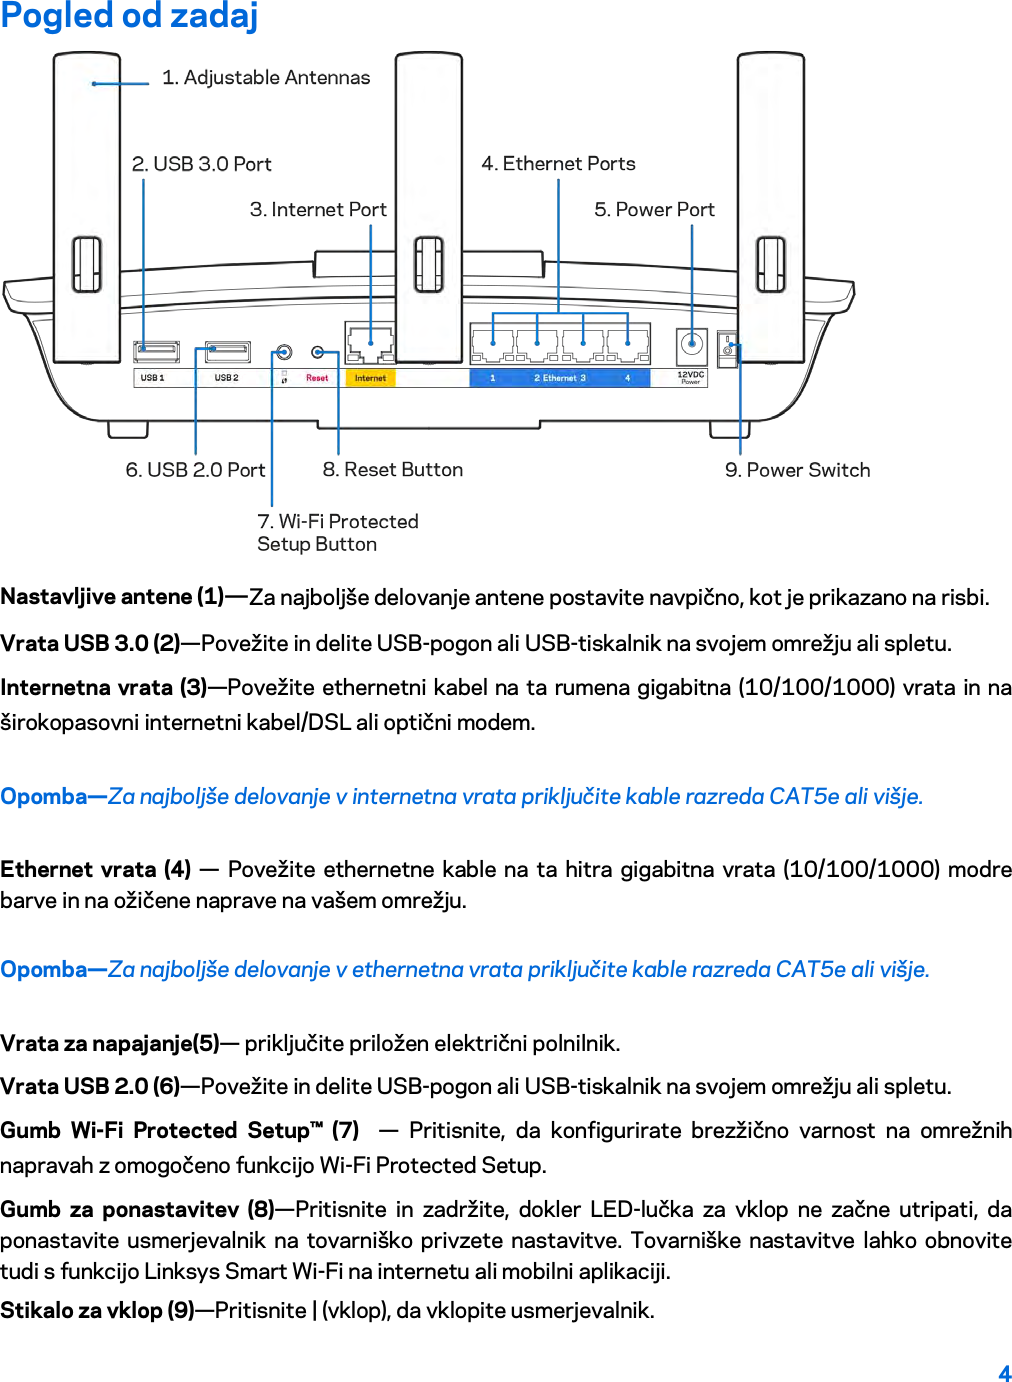 4  Pogled od zadaj  Nastavljive antene (1)—Za najboljše delovanje antene postavite navpično, kot je prikazano na risbi. Vrata USB 3.0 (2)—Povežite in delite USB-pogon ali USB-tiskalnik na svojem omrežju ali spletu. Internetna vrata (3)—Povežite ethernetni kabel na ta rumena gigabitna (10/100/1000) vrata in na širokopasovni internetni kabel/DSL ali optični modem. Opomba—Za najboljše delovanje v internetna vrata priključite kable razreda CAT5e ali višje. Ethernet vrata (4) — Povežite ethernetne kable na ta hitra gigabitna vrata (10/100/1000) modre barve in na ožičene naprave na vašem omrežju. Opomba—Za najboljše delovanje v ethernetna vrata priključite kable razreda CAT5e ali višje. Vrata za napajanje(5)— priključite priložen električni polnilnik. Vrata USB 2.0 (6)—Povežite in delite USB-pogon ali USB-tiskalnik na svojem omrežju ali spletu. Gumb Wi-Fi Protected Setup™ (7)   —  Pritisnite, da konfigurirate brezžično varnost na omrežnih napravah z omogočeno funkcijo Wi-Fi Protected Setup. Gumb za ponastavitev (8)—Pritisnite in zadržite, dokler LED-lučka za vklop ne začne utripati, da ponastavite usmerjevalnik na tovarniško privzete nastavitve. Tovarniške nastavitve lahko obnovite tudi s funkcijo Linksys Smart Wi-Fi na internetu ali mobilni aplikaciji. Stikalo za vklop (9)—Pritisnite | (vklop), da vklopite usmerjevalnik. 